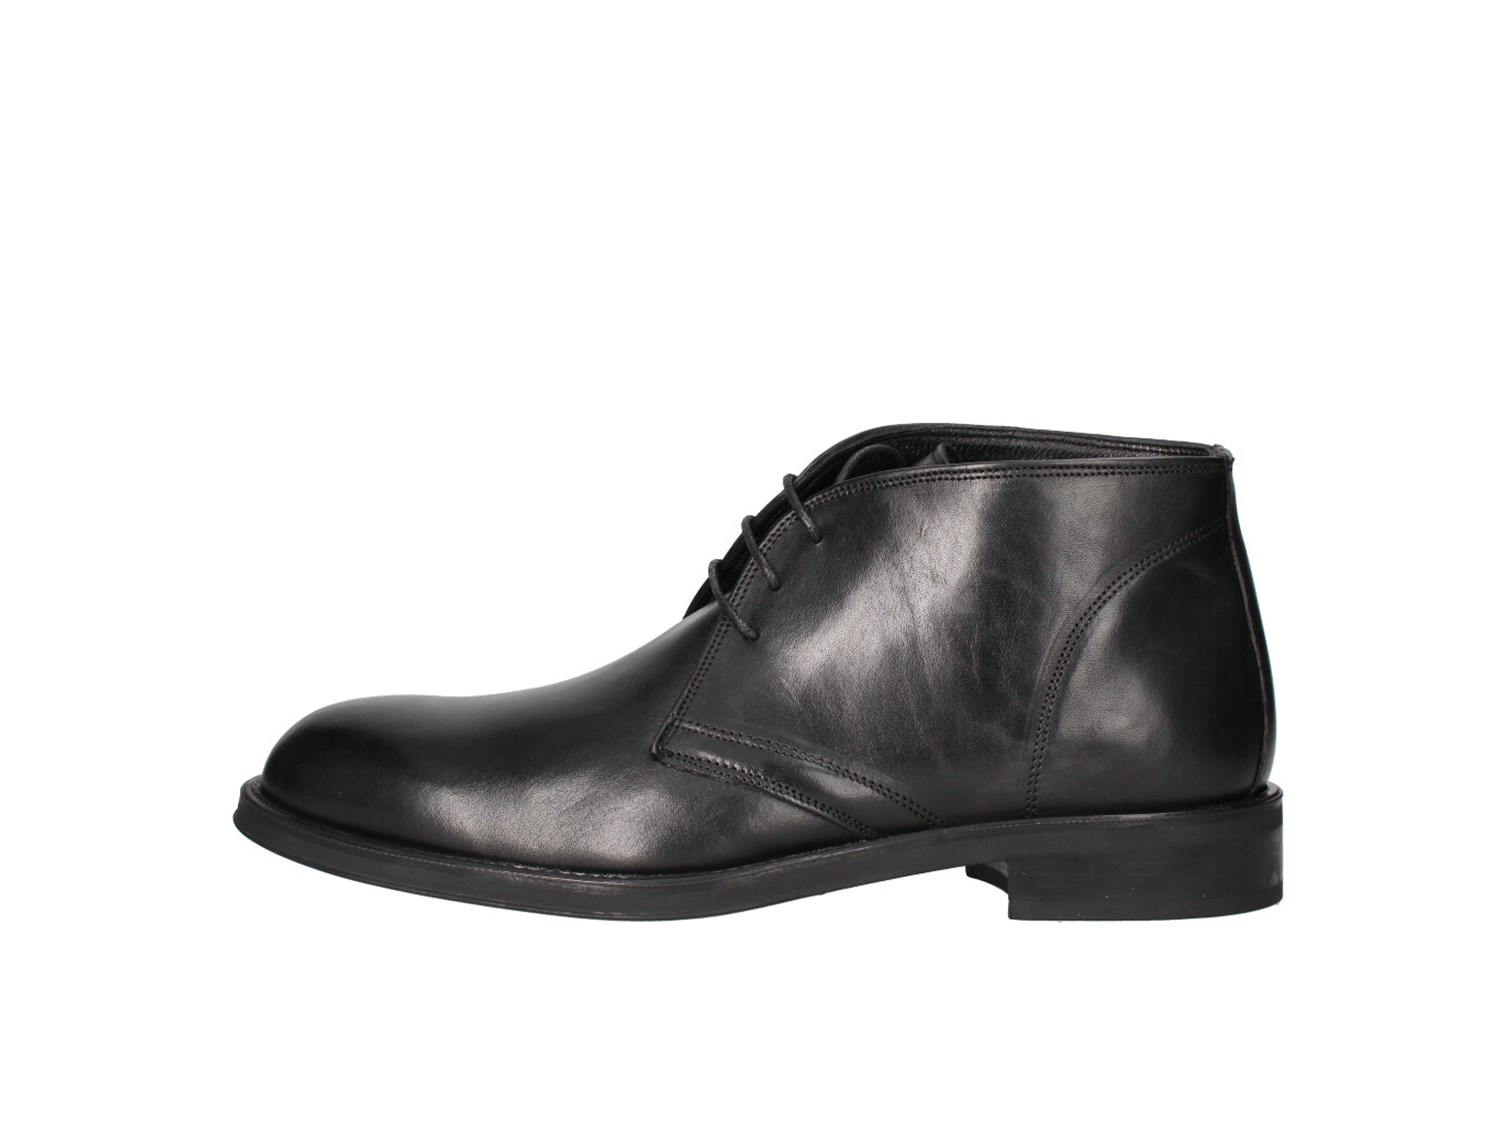 Arcuri 3616-3 Black Shoes Man ankle